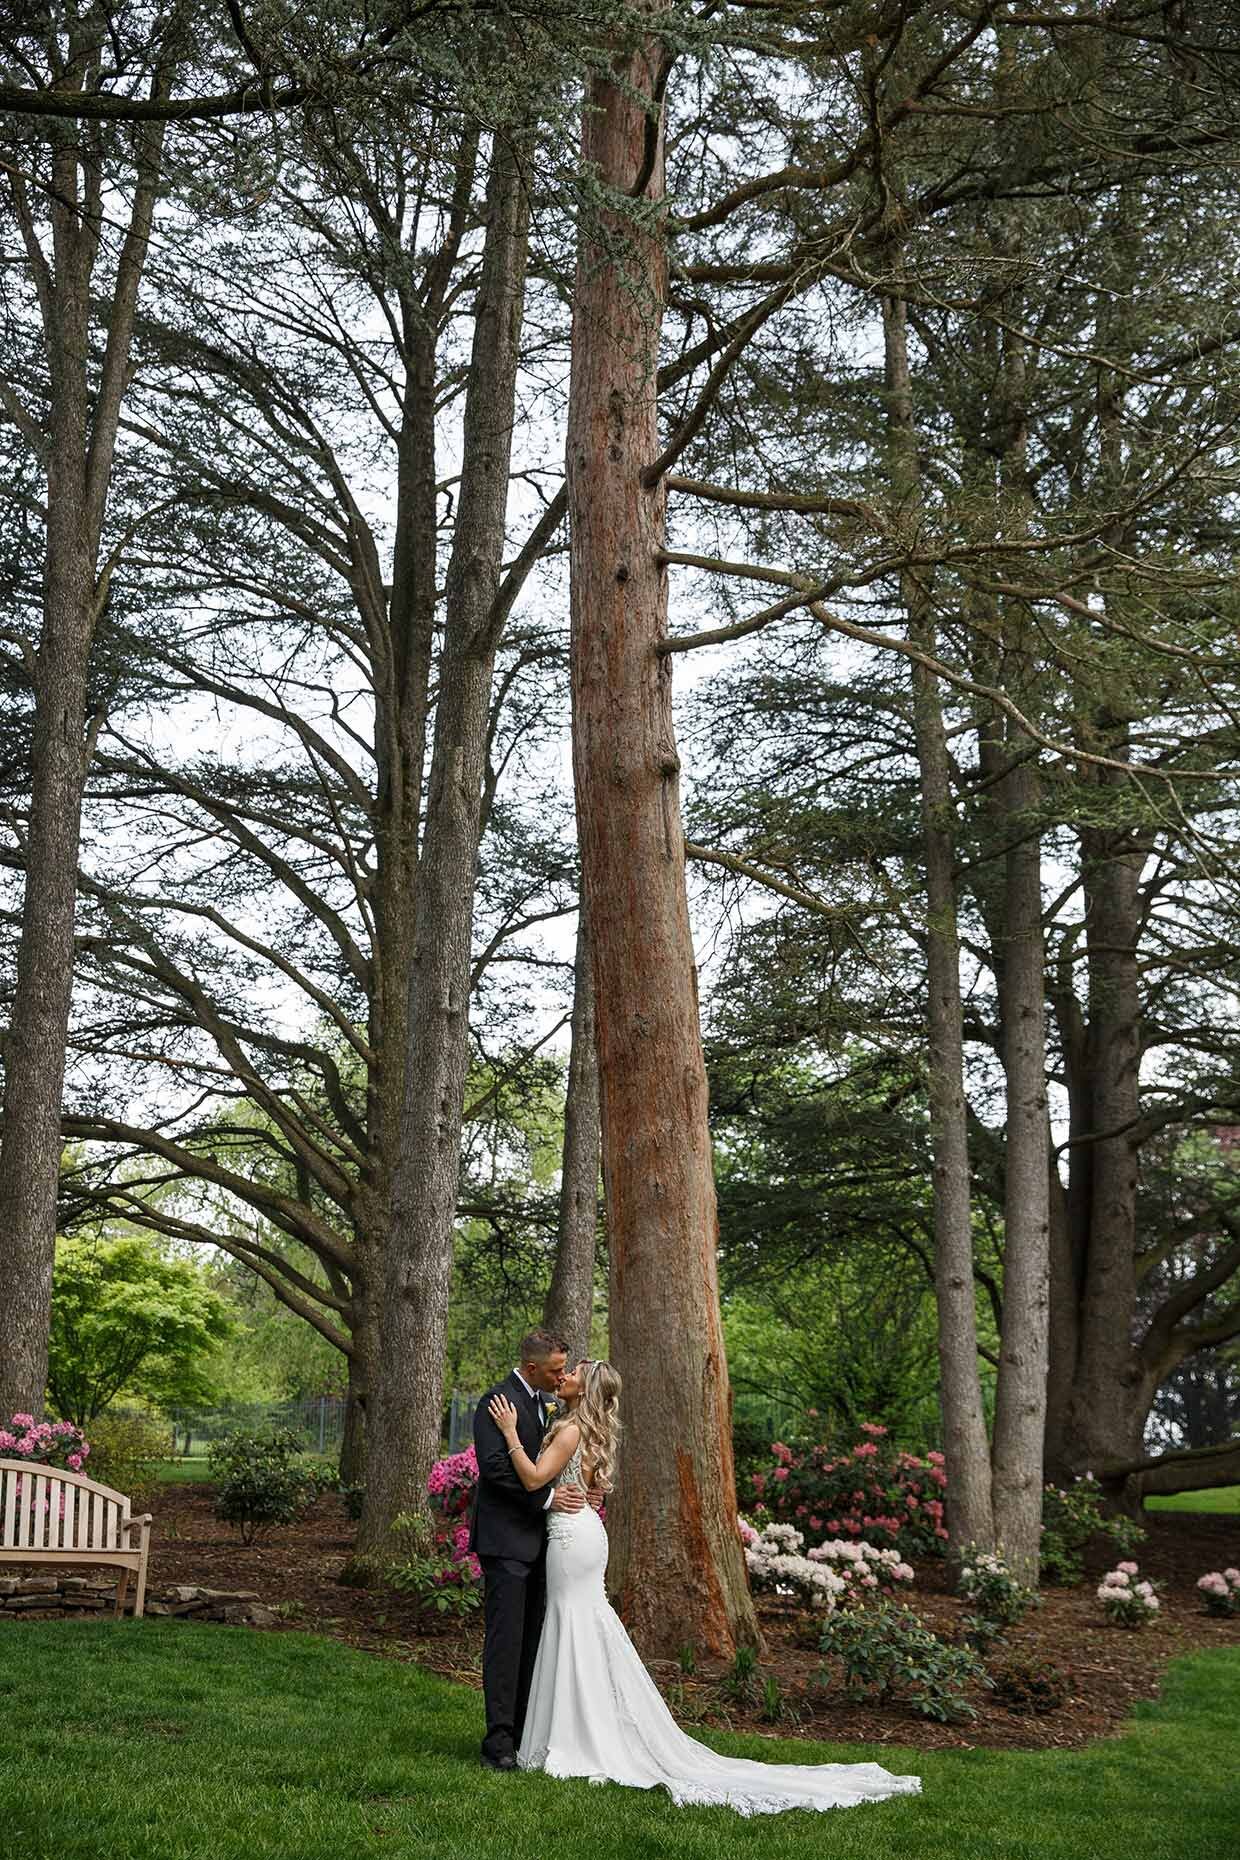 First look amongst cedar trees in Hershey Gardens